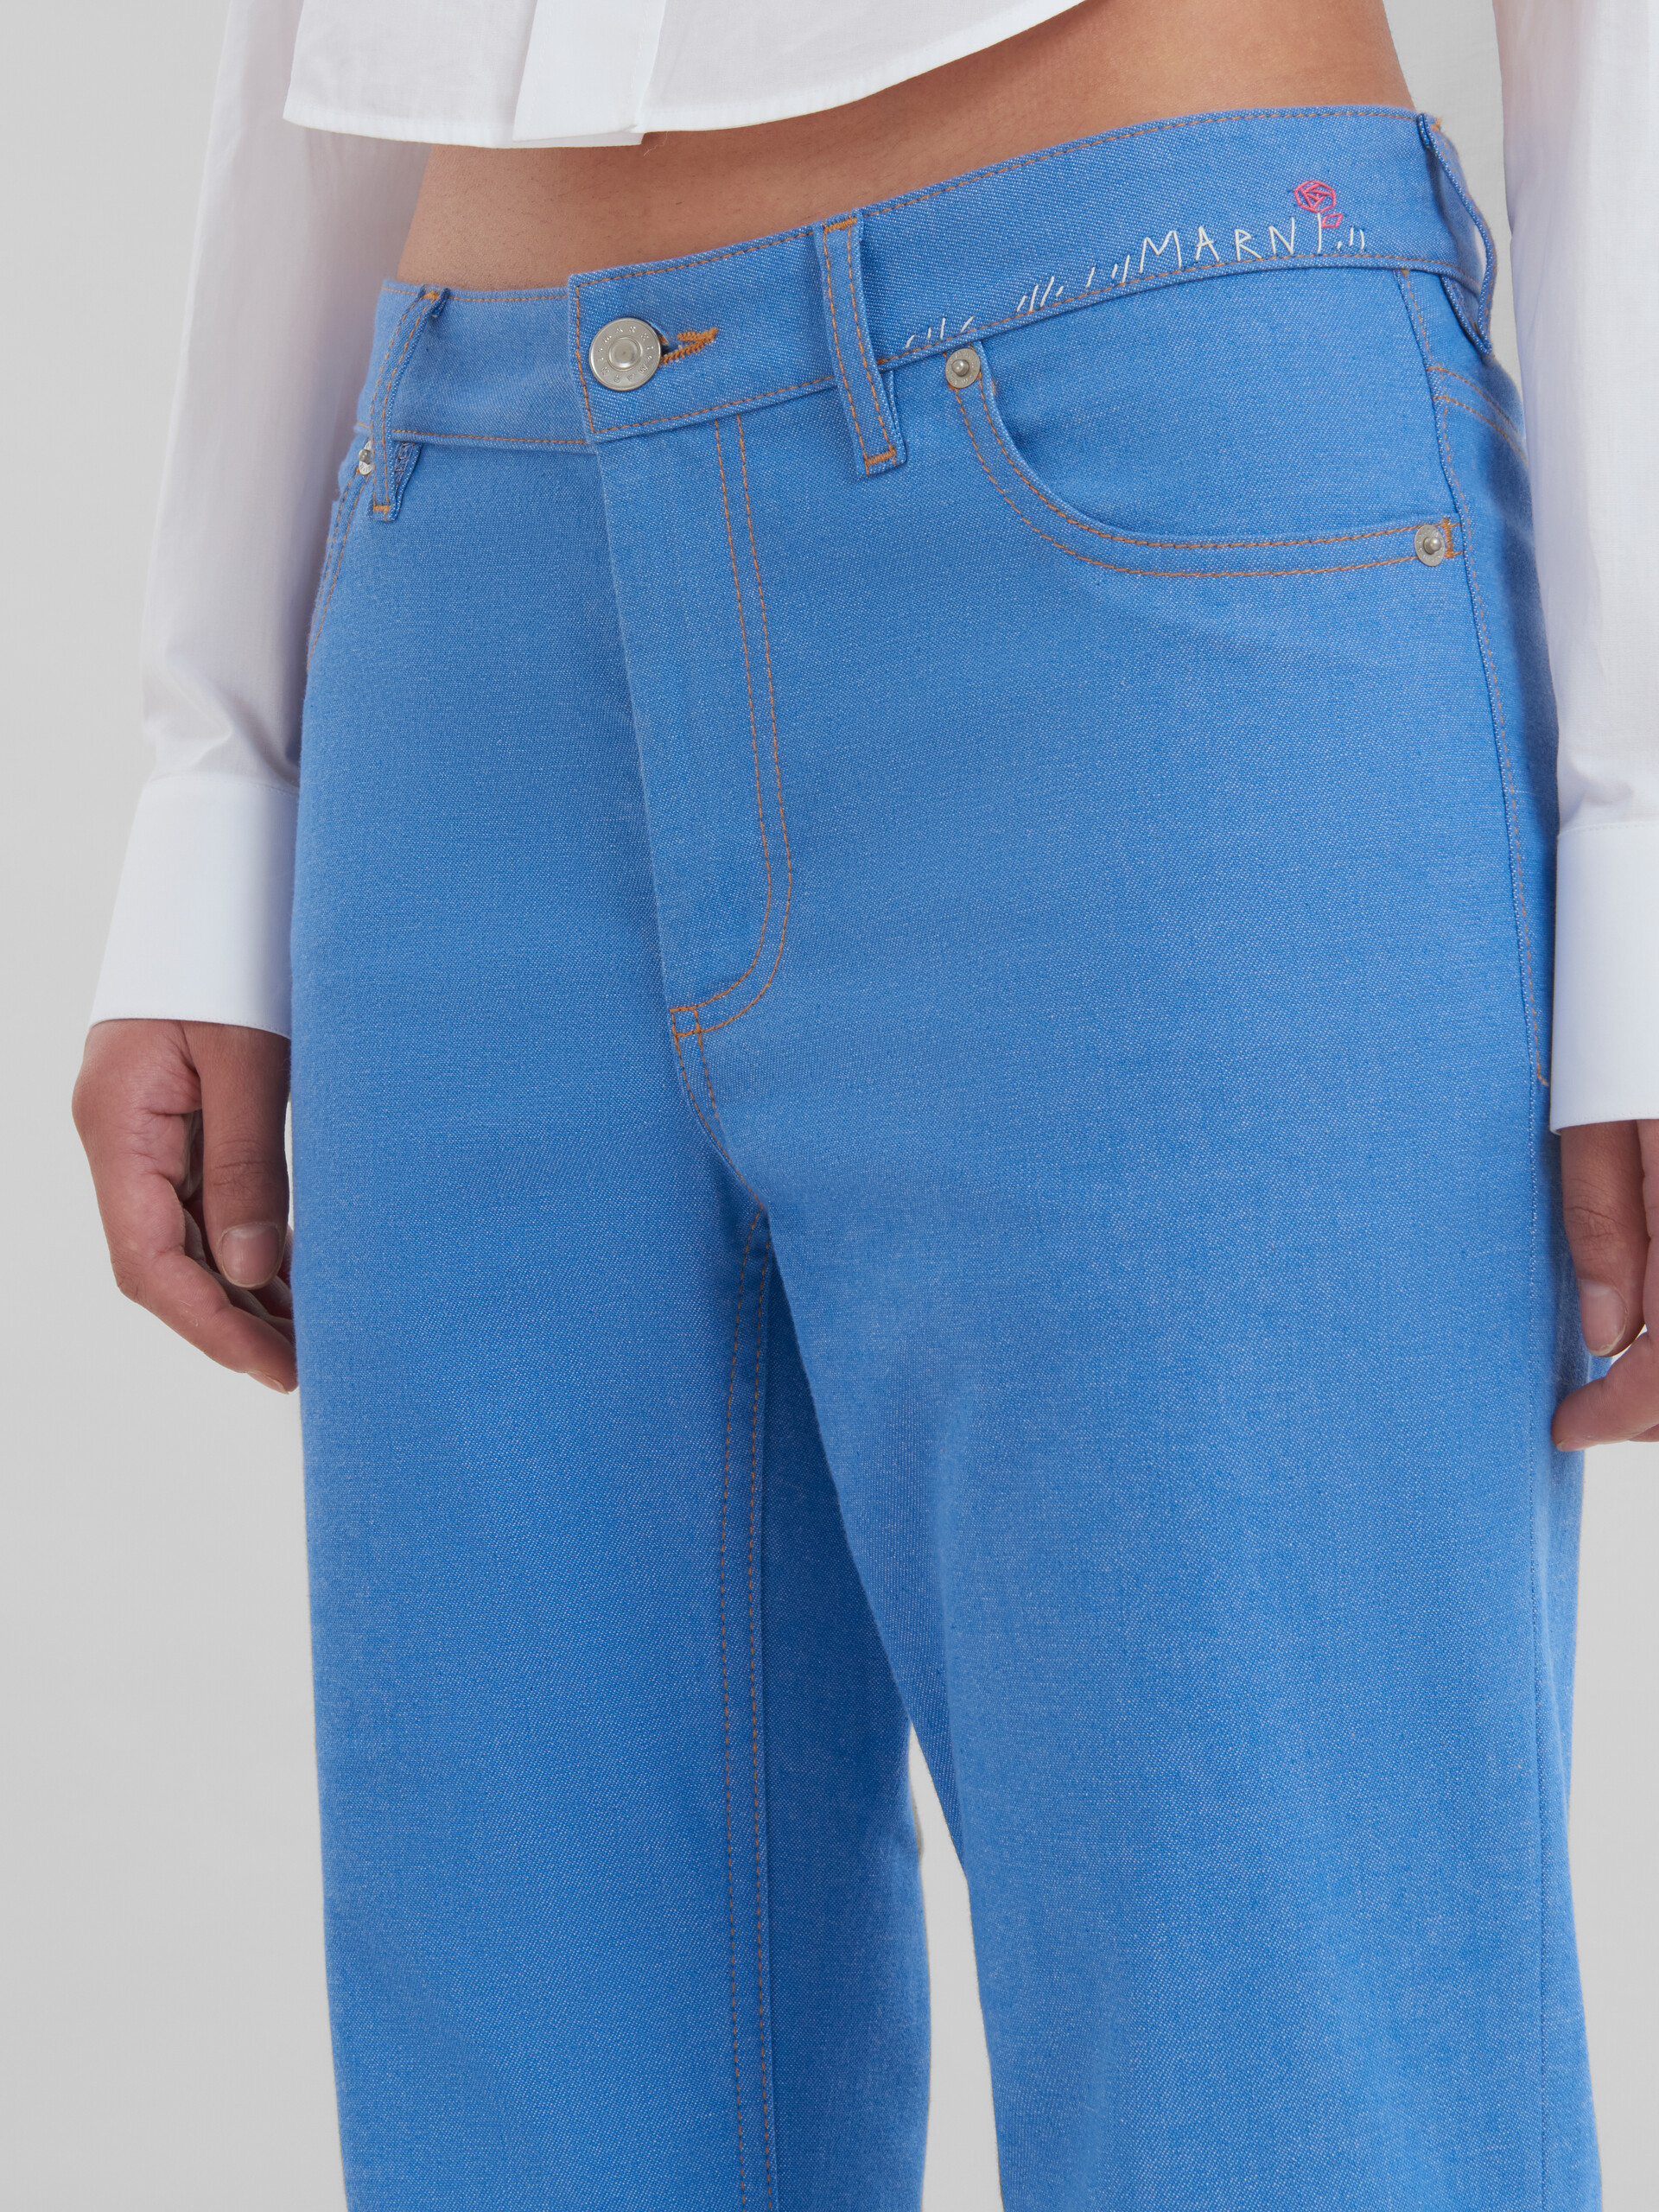 Pantalón acampanado de denim elástico azul - Pantalones - Image 4